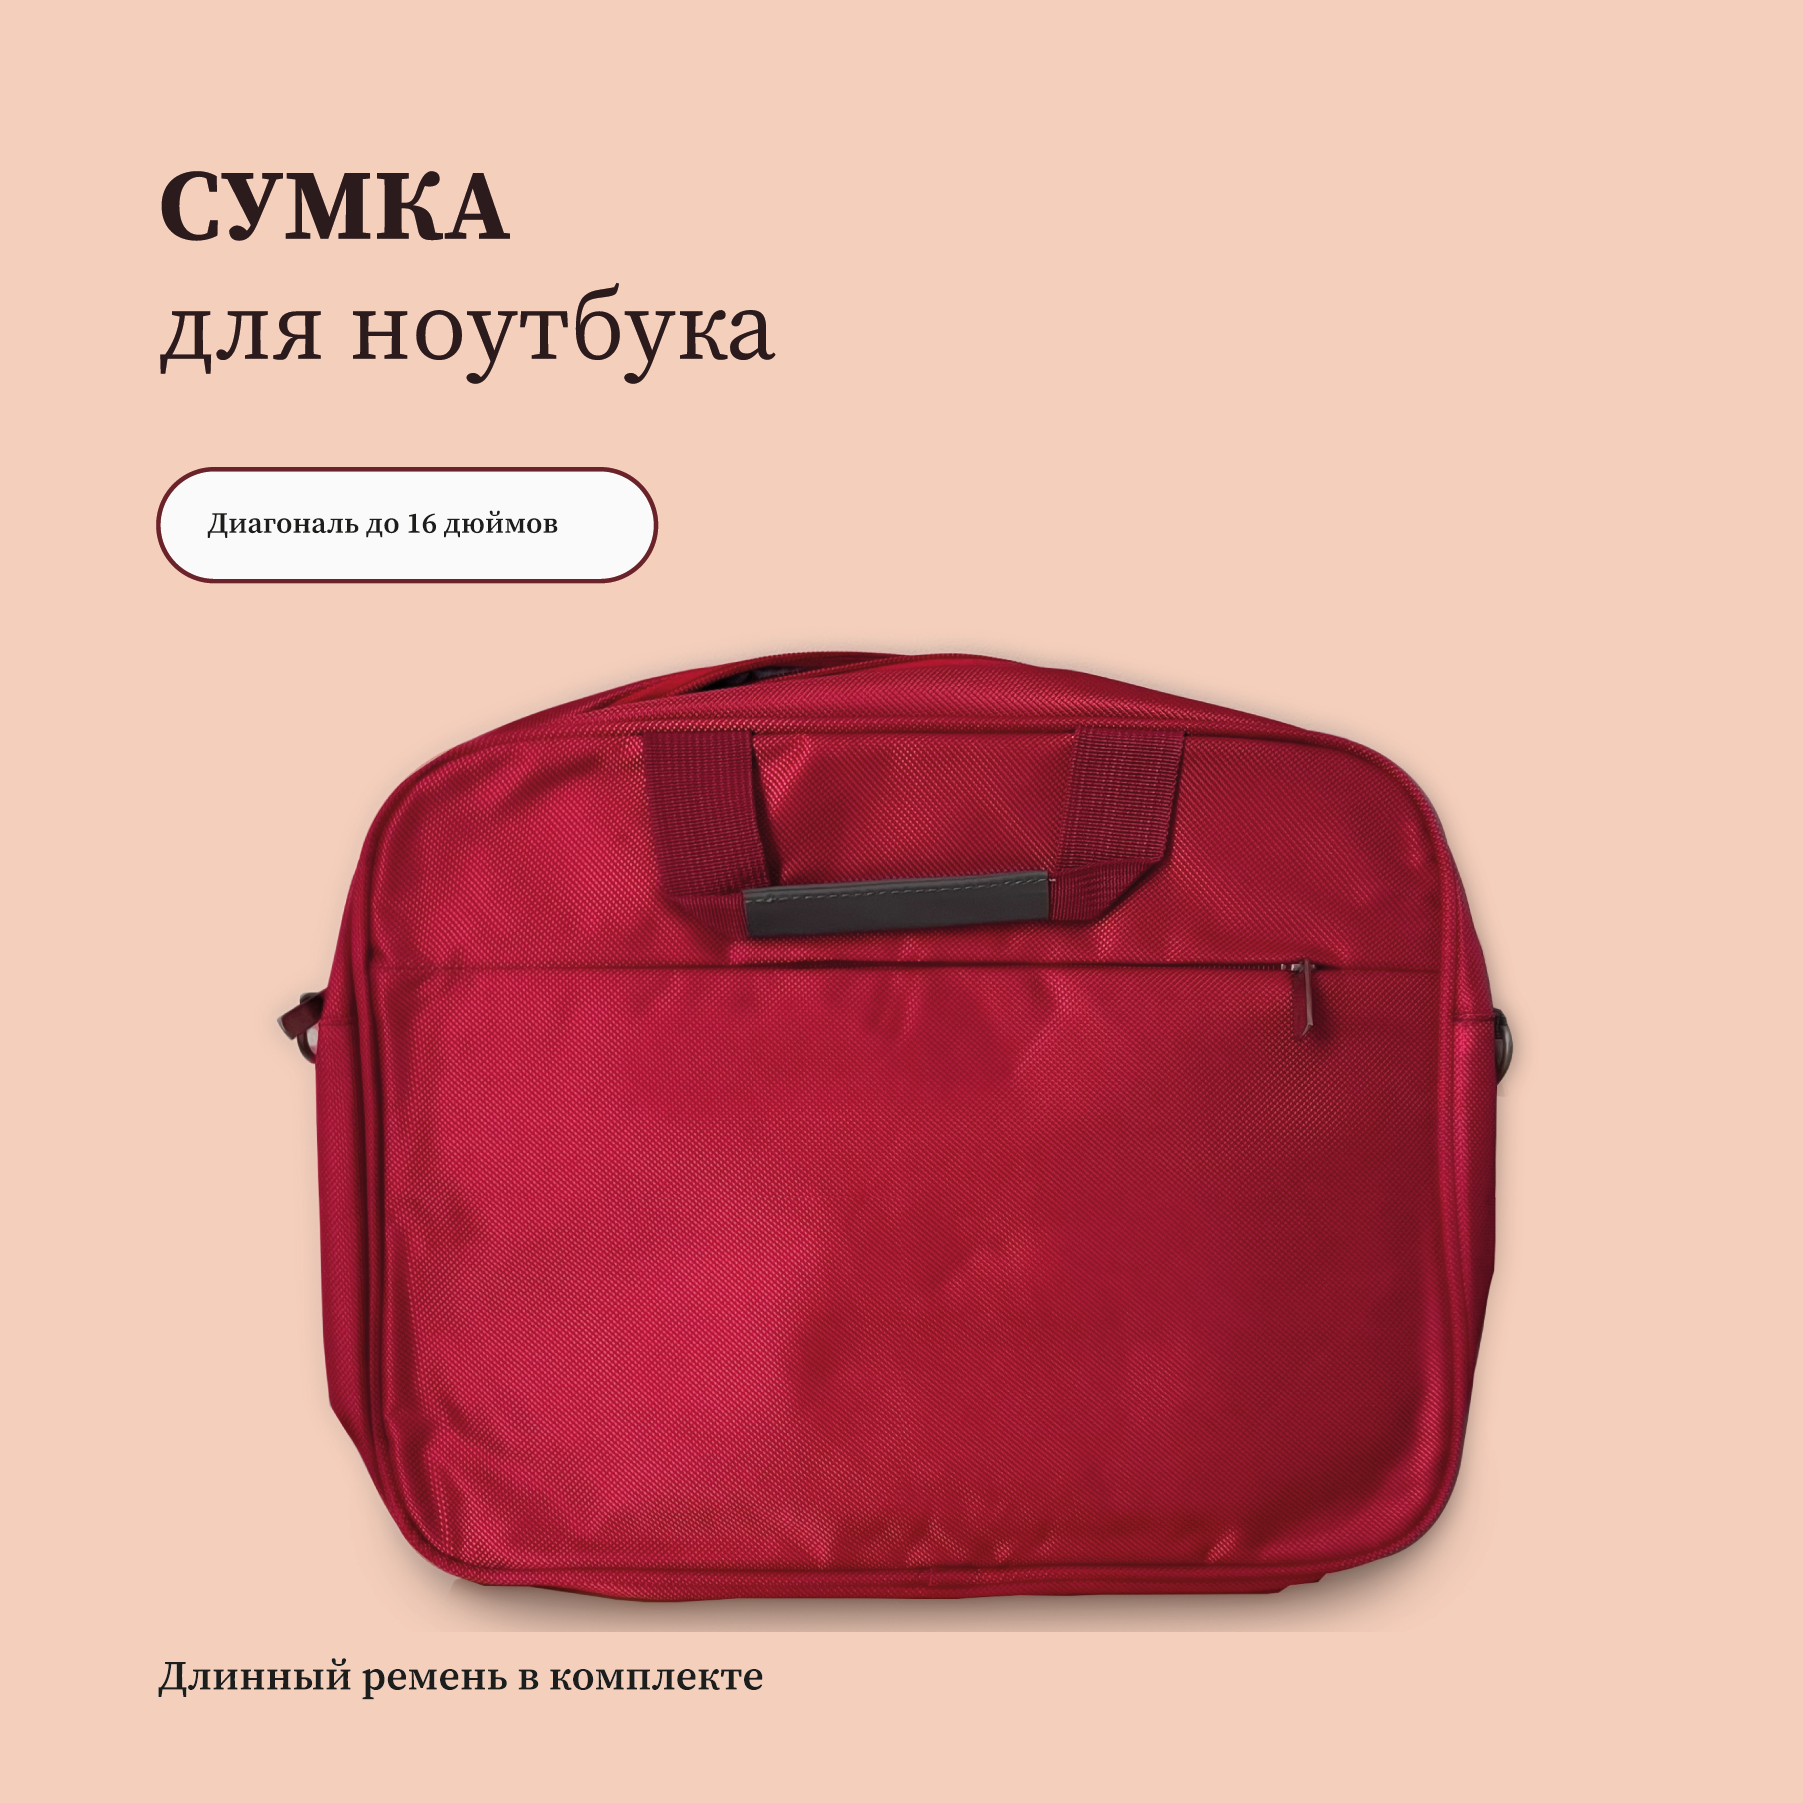 Сумка для ноутбука макбука (Macbook) 13-14.1 дюймов с ремнем мужская женская / Деловая сумка через плечо размер 38-28-5 см красный